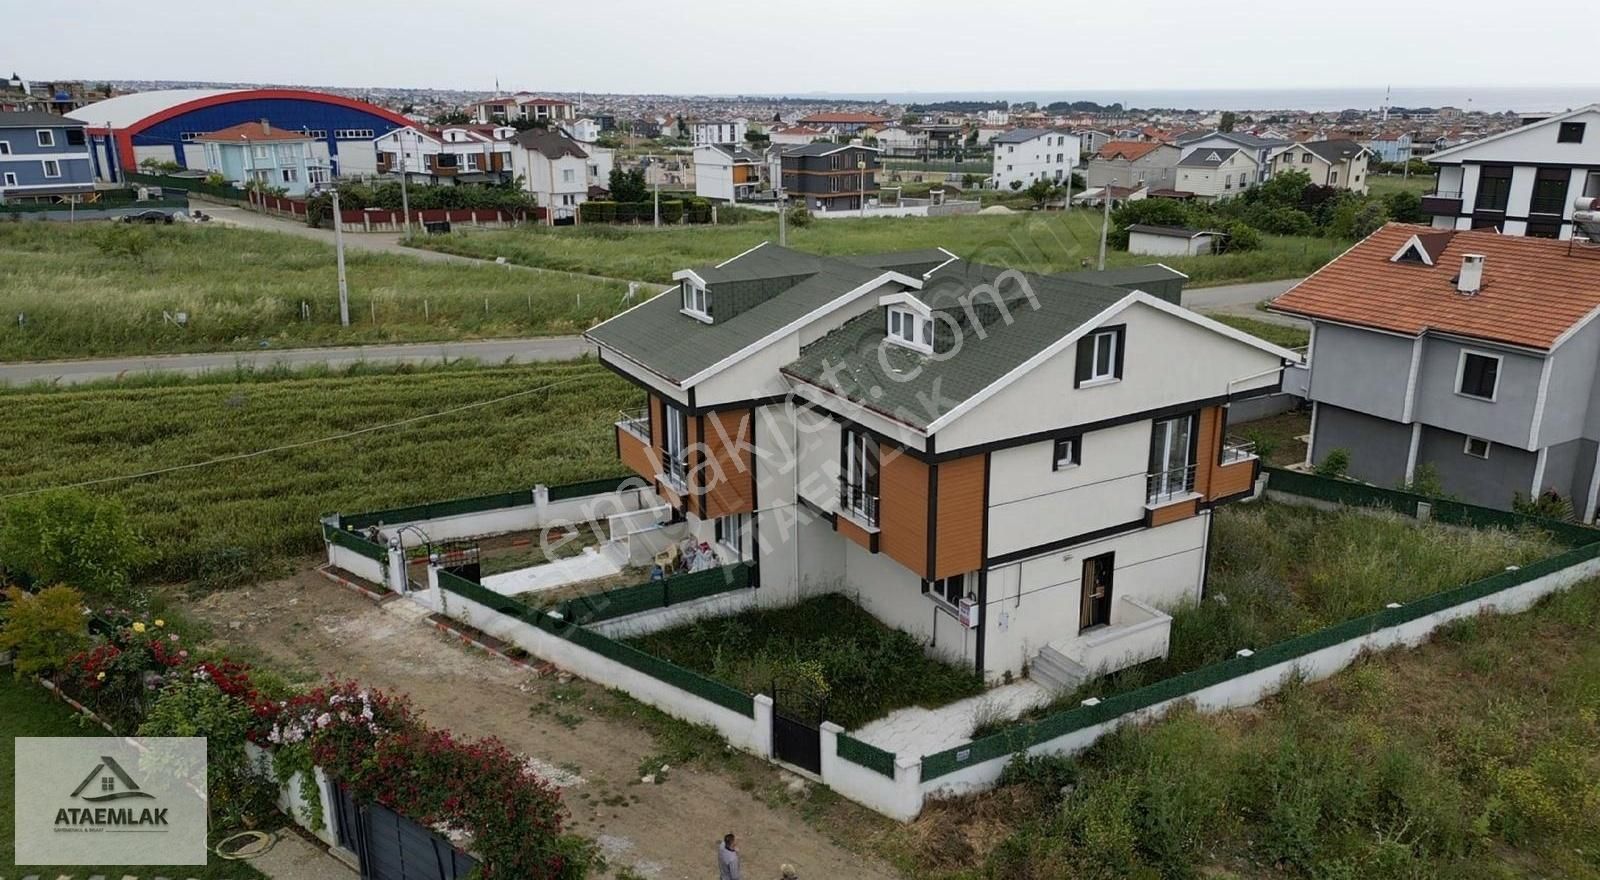 Marmaraereğlisi Yeniçiftlik Satılık Villa ATA GAYRİMENKUL'den KREDİYE UYGUN MERKEZİ KONUMDA 4+1 VİLLA